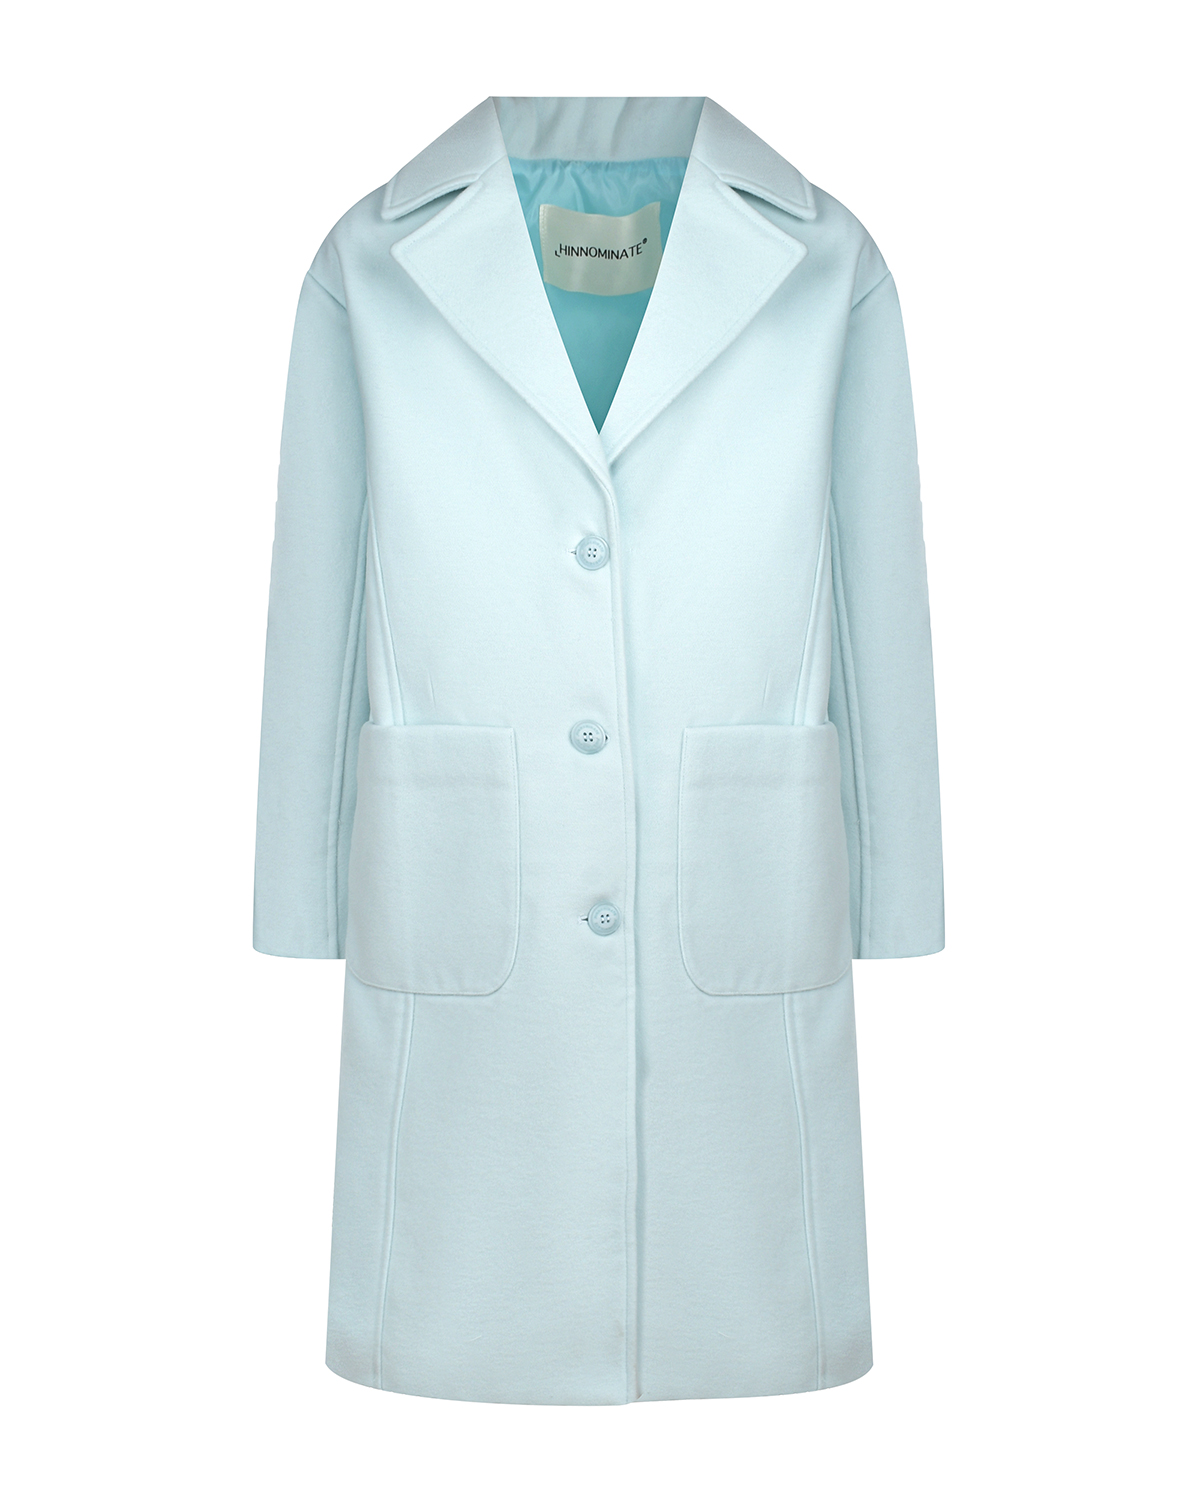 Пальто бирюзового цвета с накладными карманами Hinnominate, размер 164